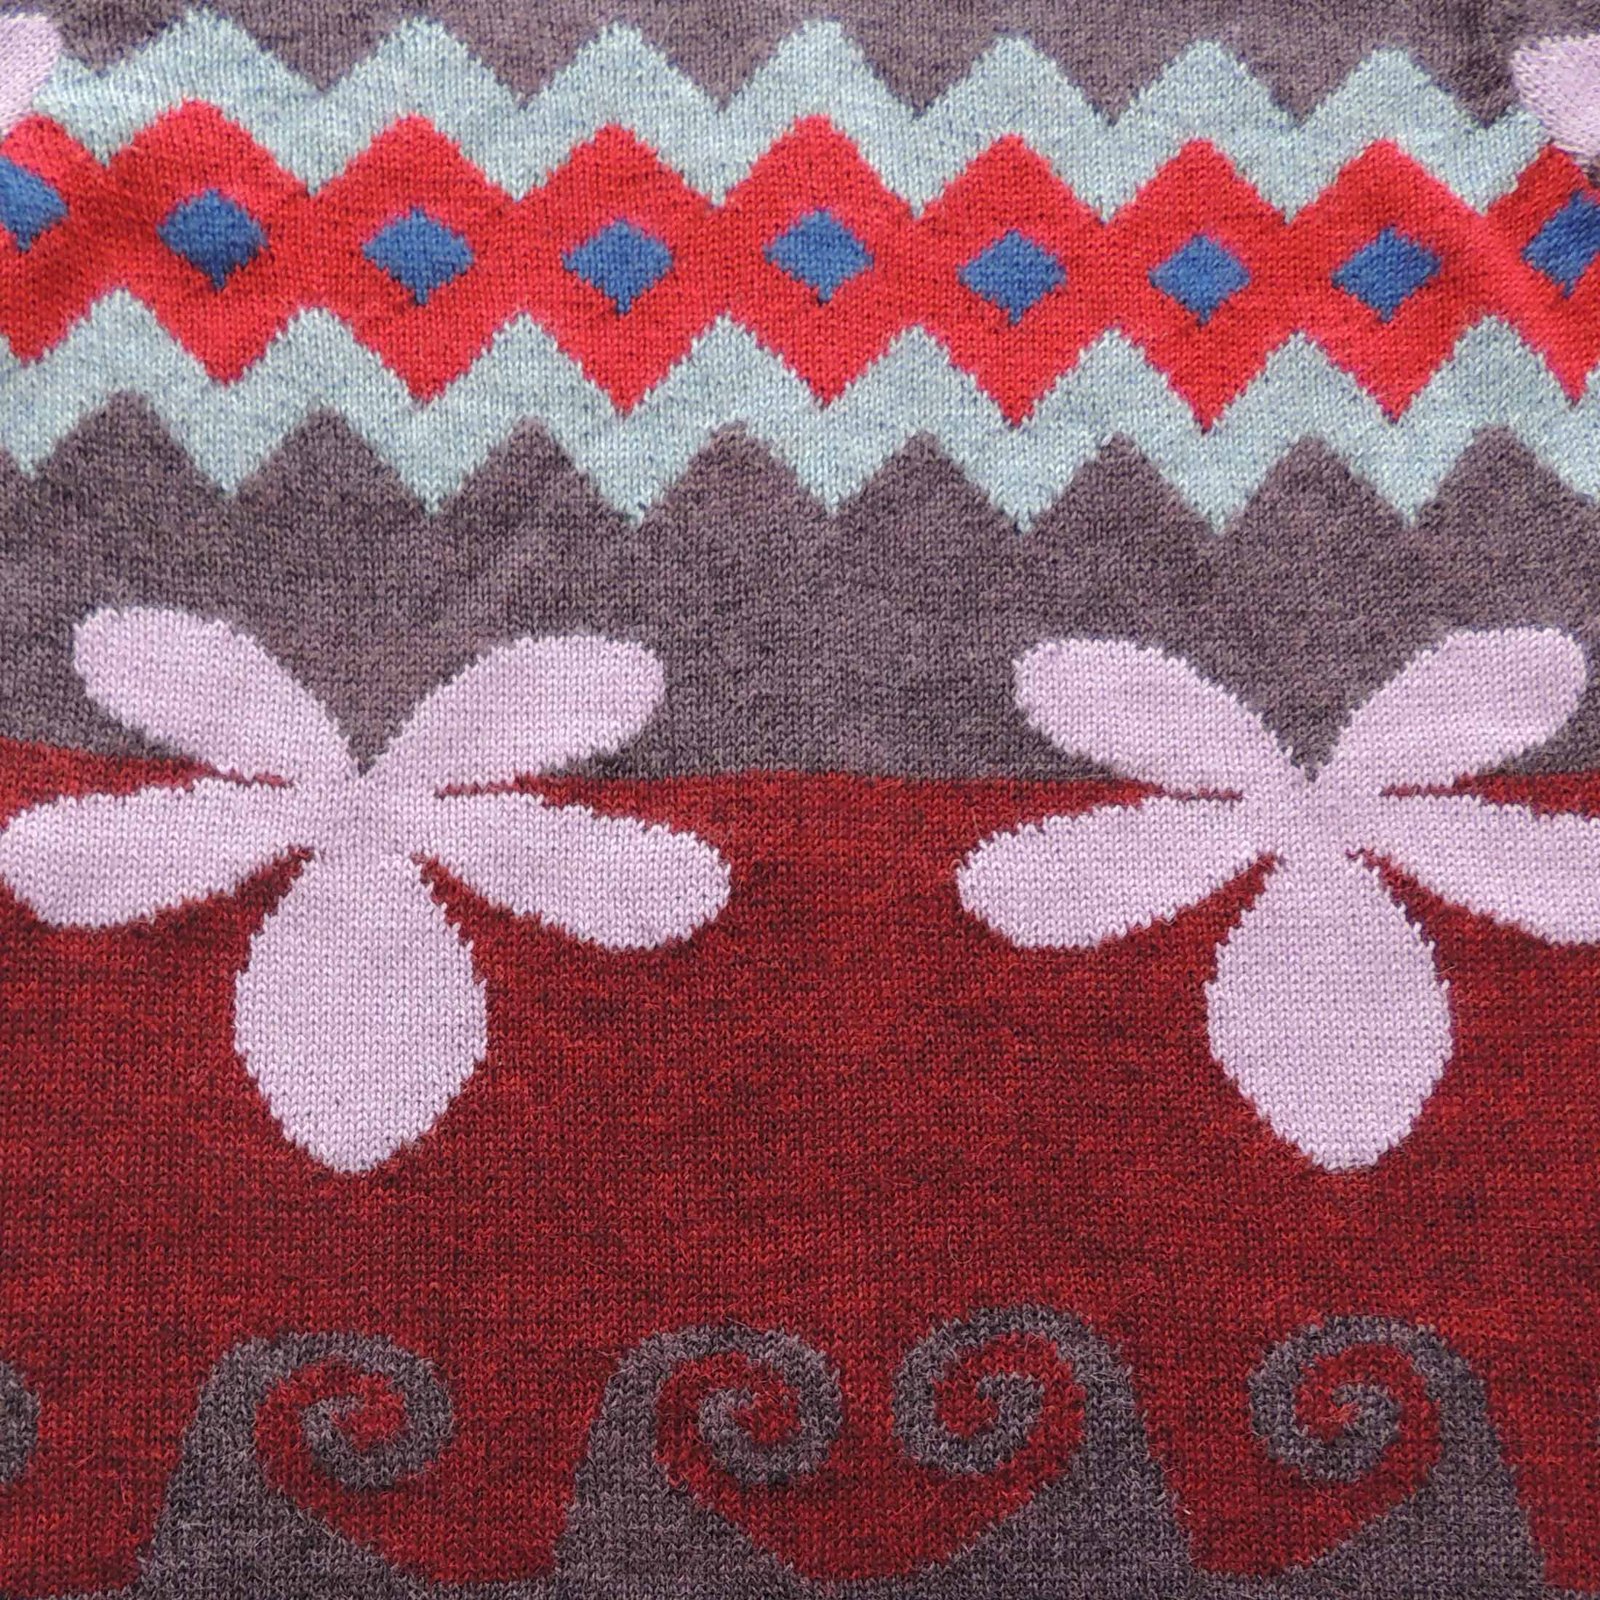 PFL knitwear cardigan alpaca intarsia knitted